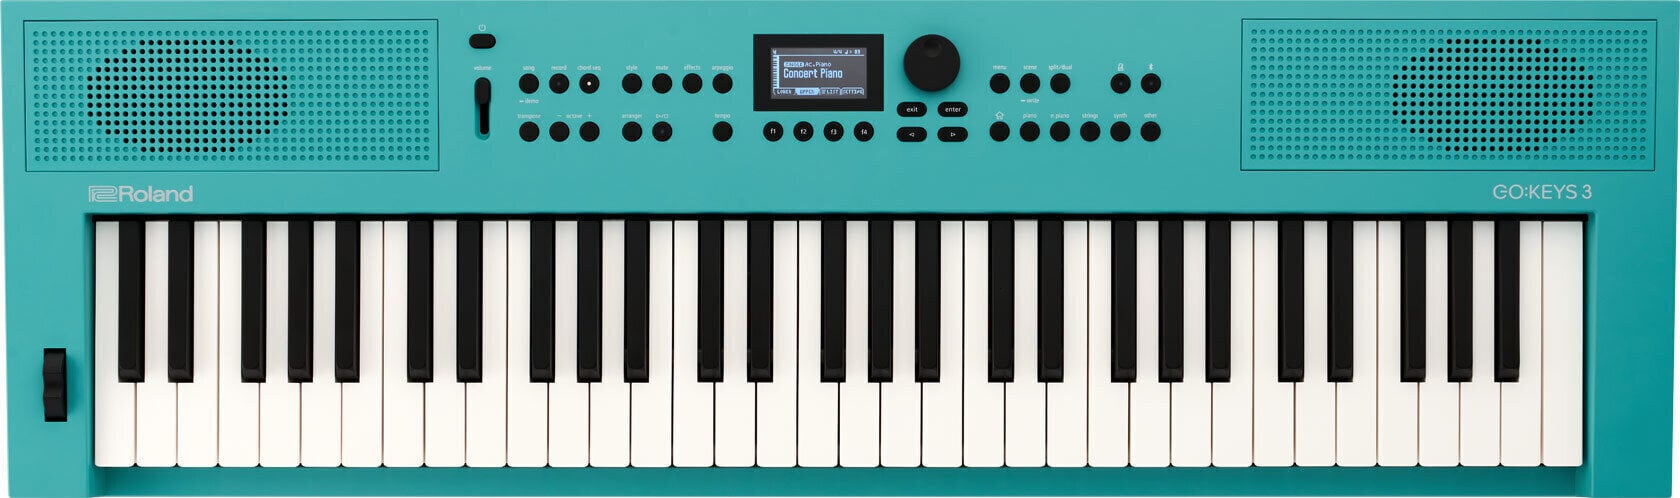 Clavier dynamique Roland GO:KEYS 3 Turquoise